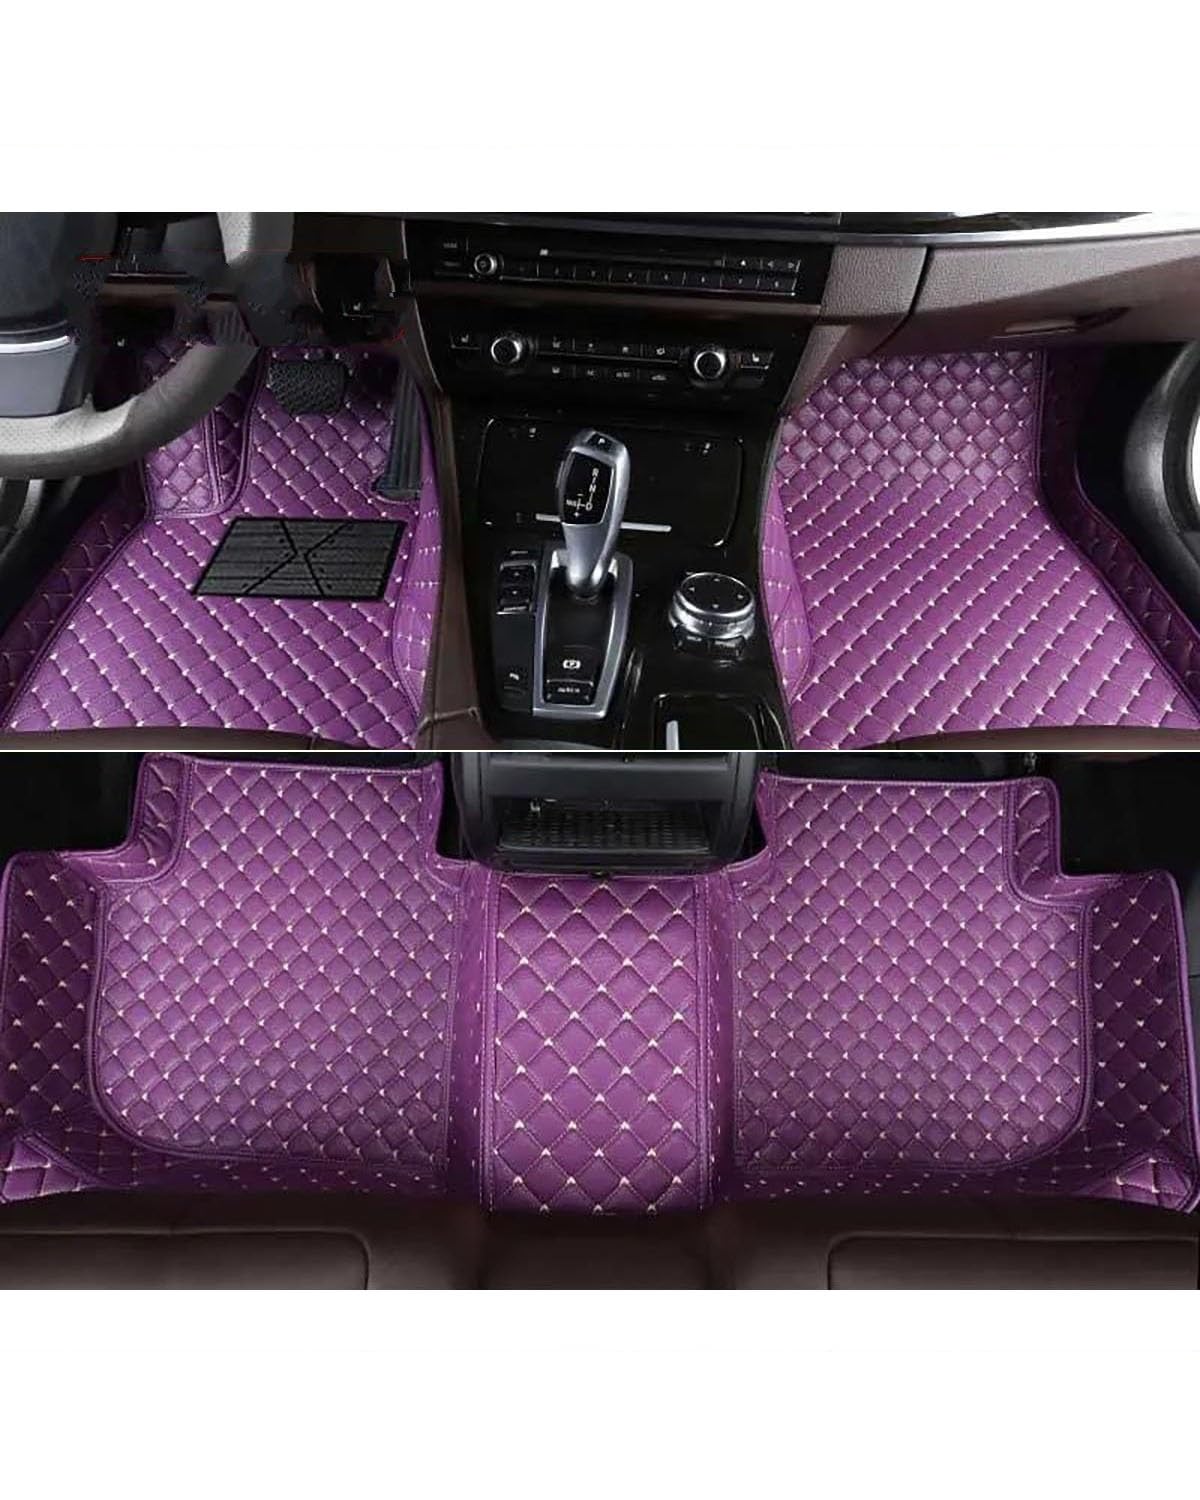 Auto Fußmatten Auto-Fußmatten Für KIA Für Quoris Für K9 Für K900 Autoteppiche Fuß Coche Autoinnenausstattung Autofußmatten(Purple) von XJJJWL